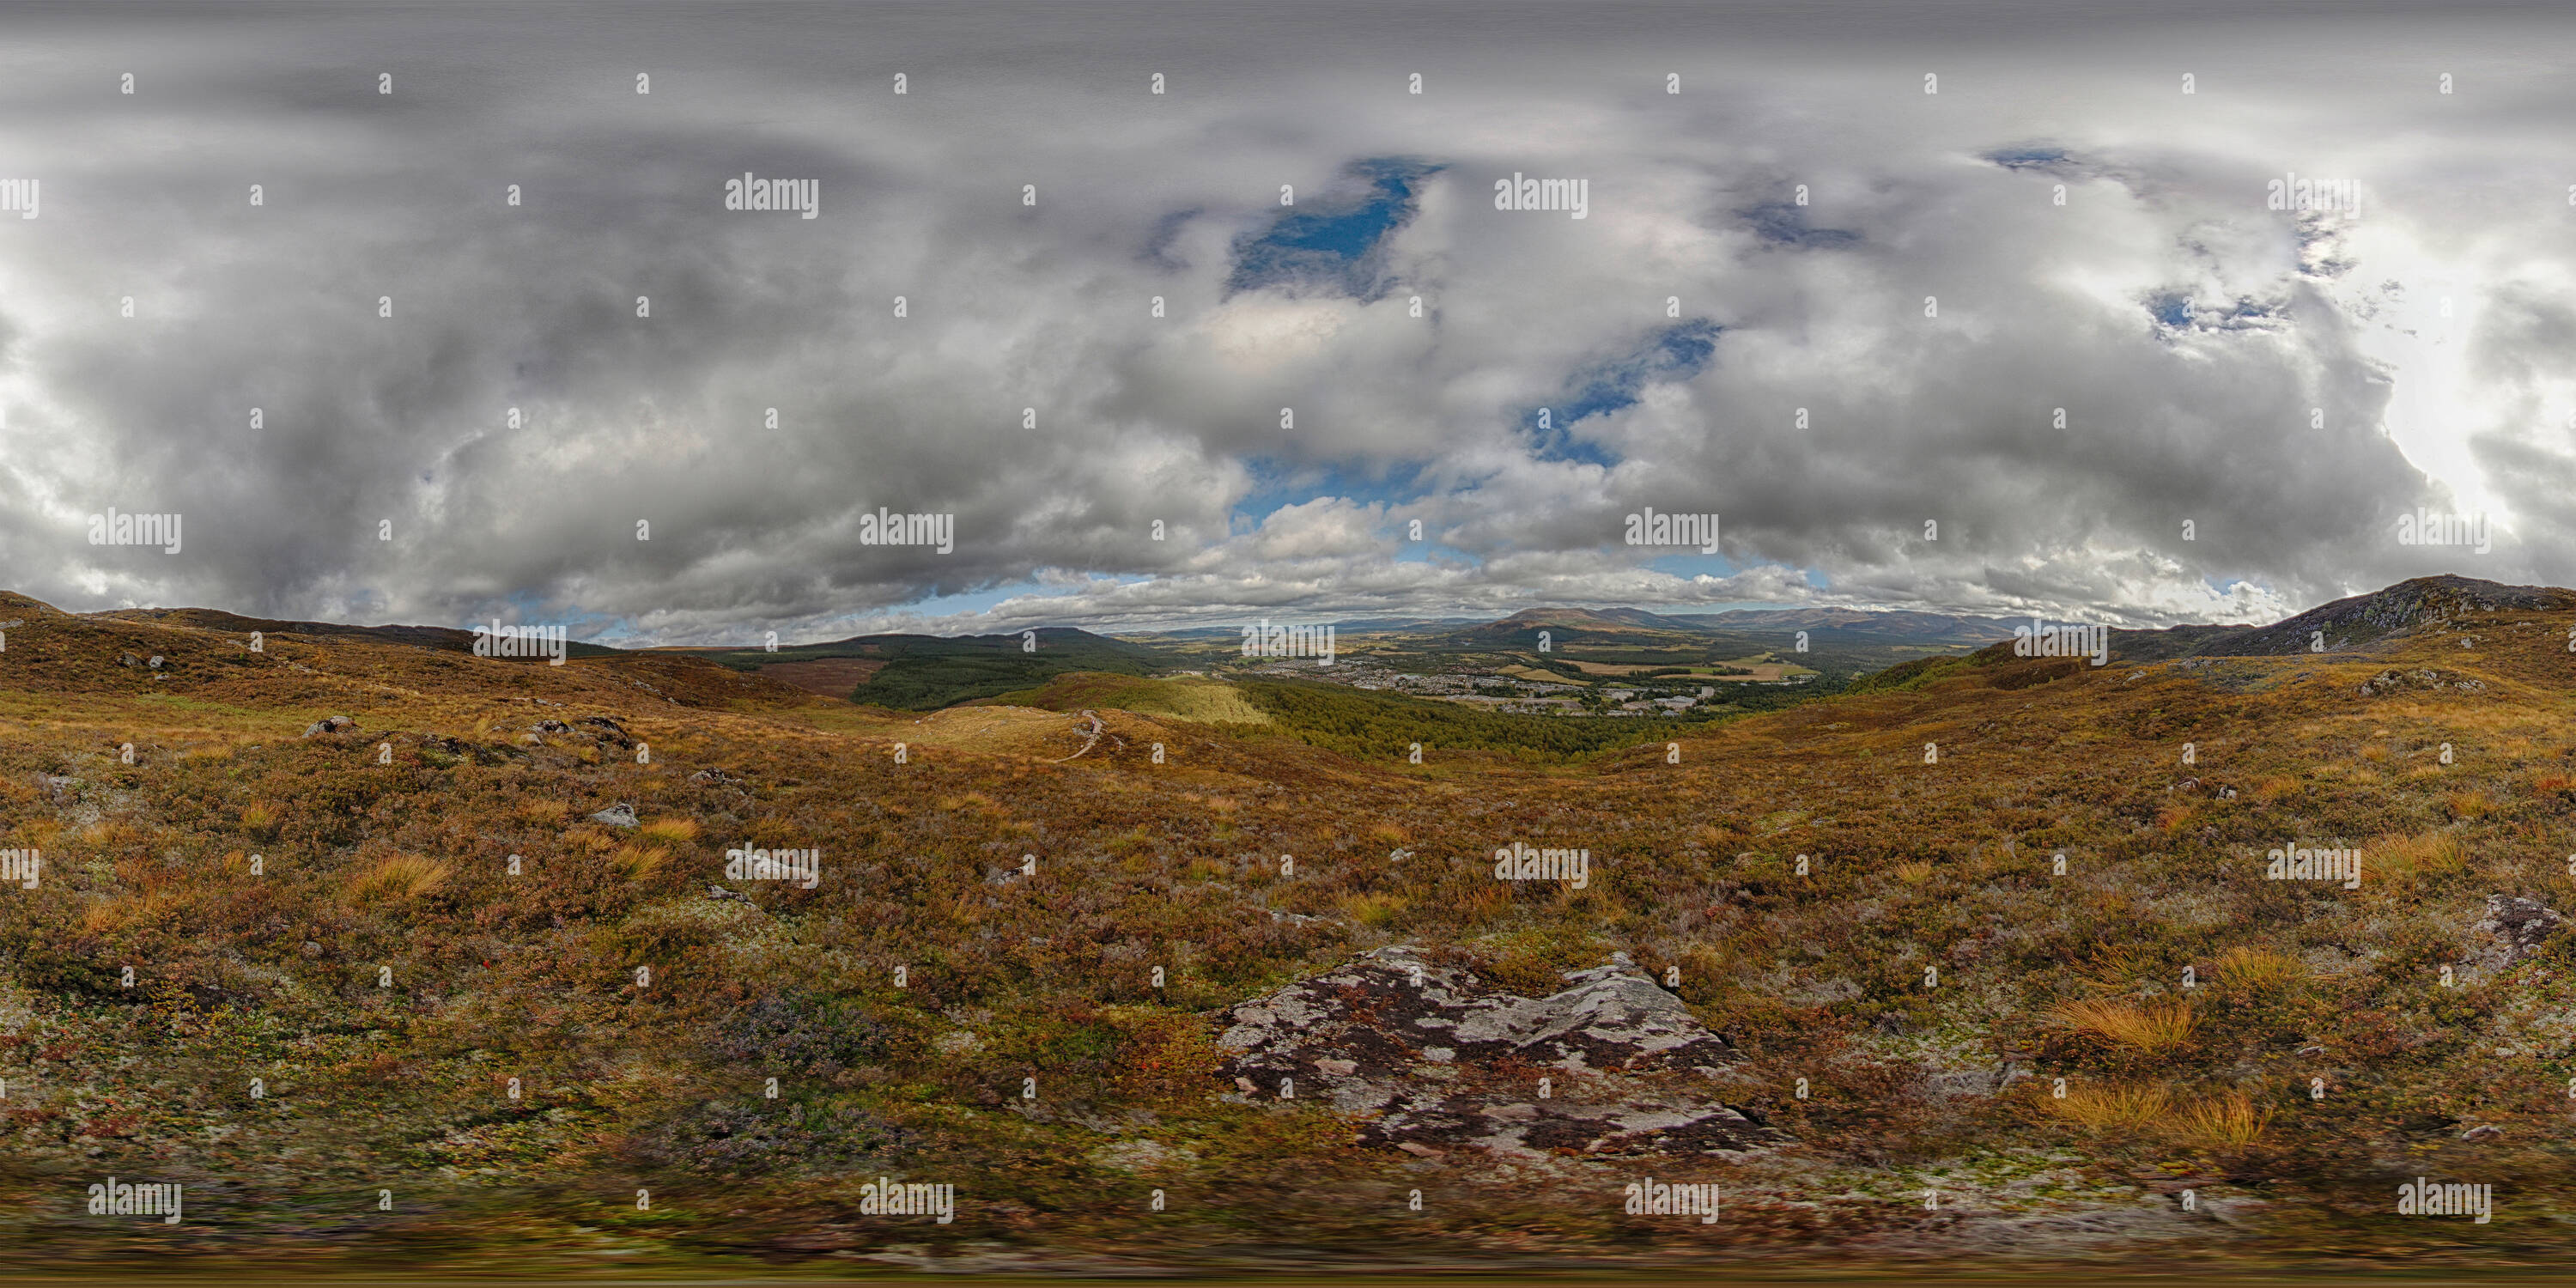 Vista panorámica en 360 grados de Escocia - Craigellachie - 02